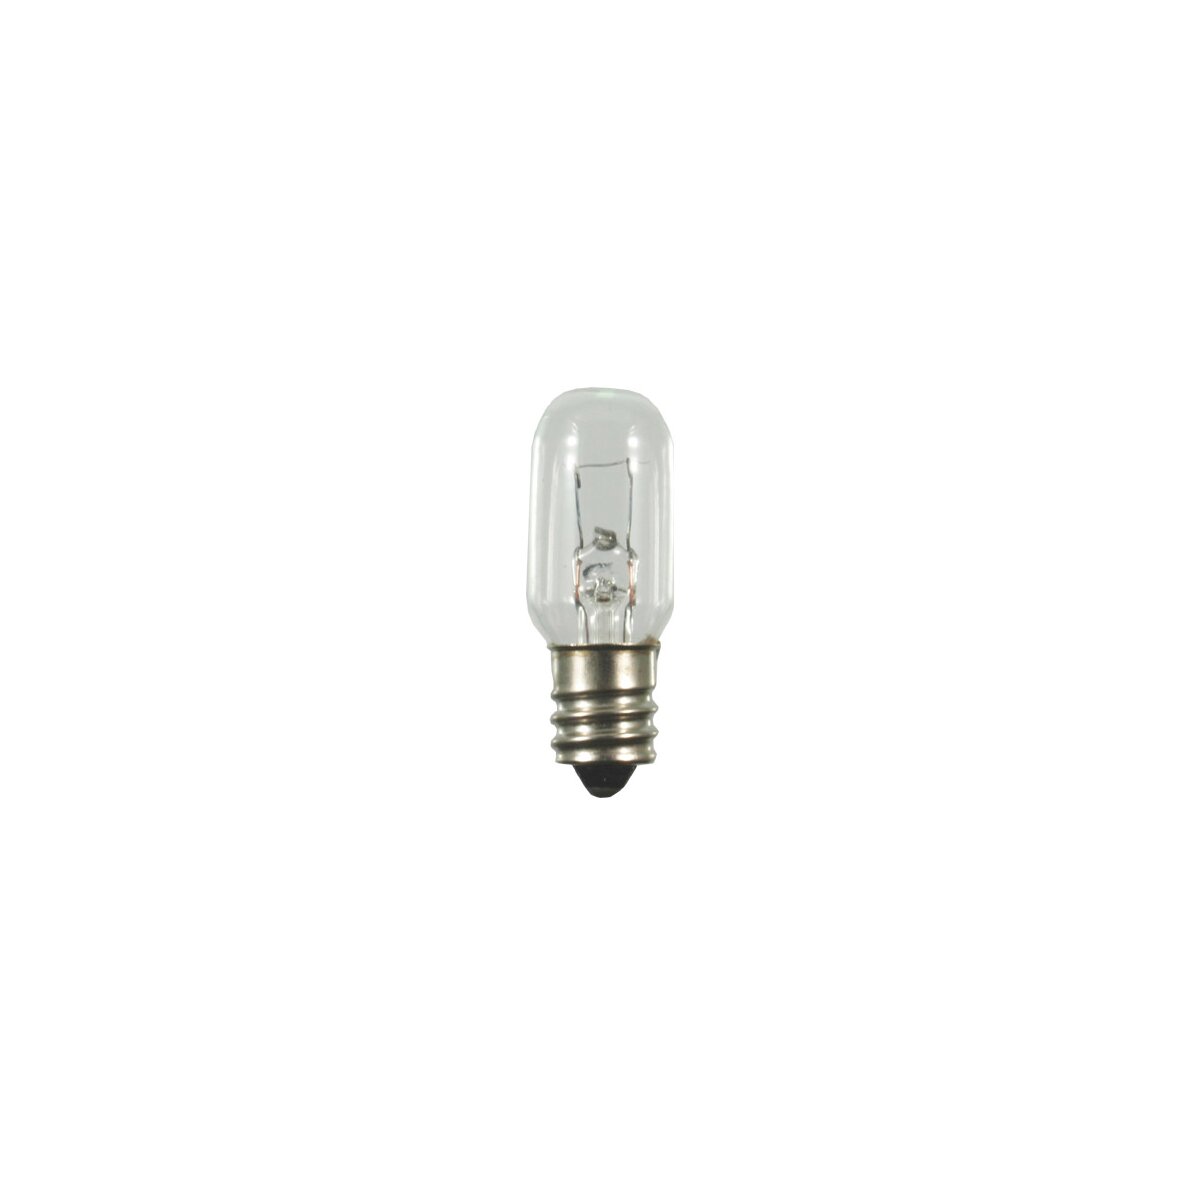 https://www.licht-lampen-leuchtmittel.de/media/image/product/98414/lg/roehrenlampe-16x45mm-e12-24v-5w-29856.jpg